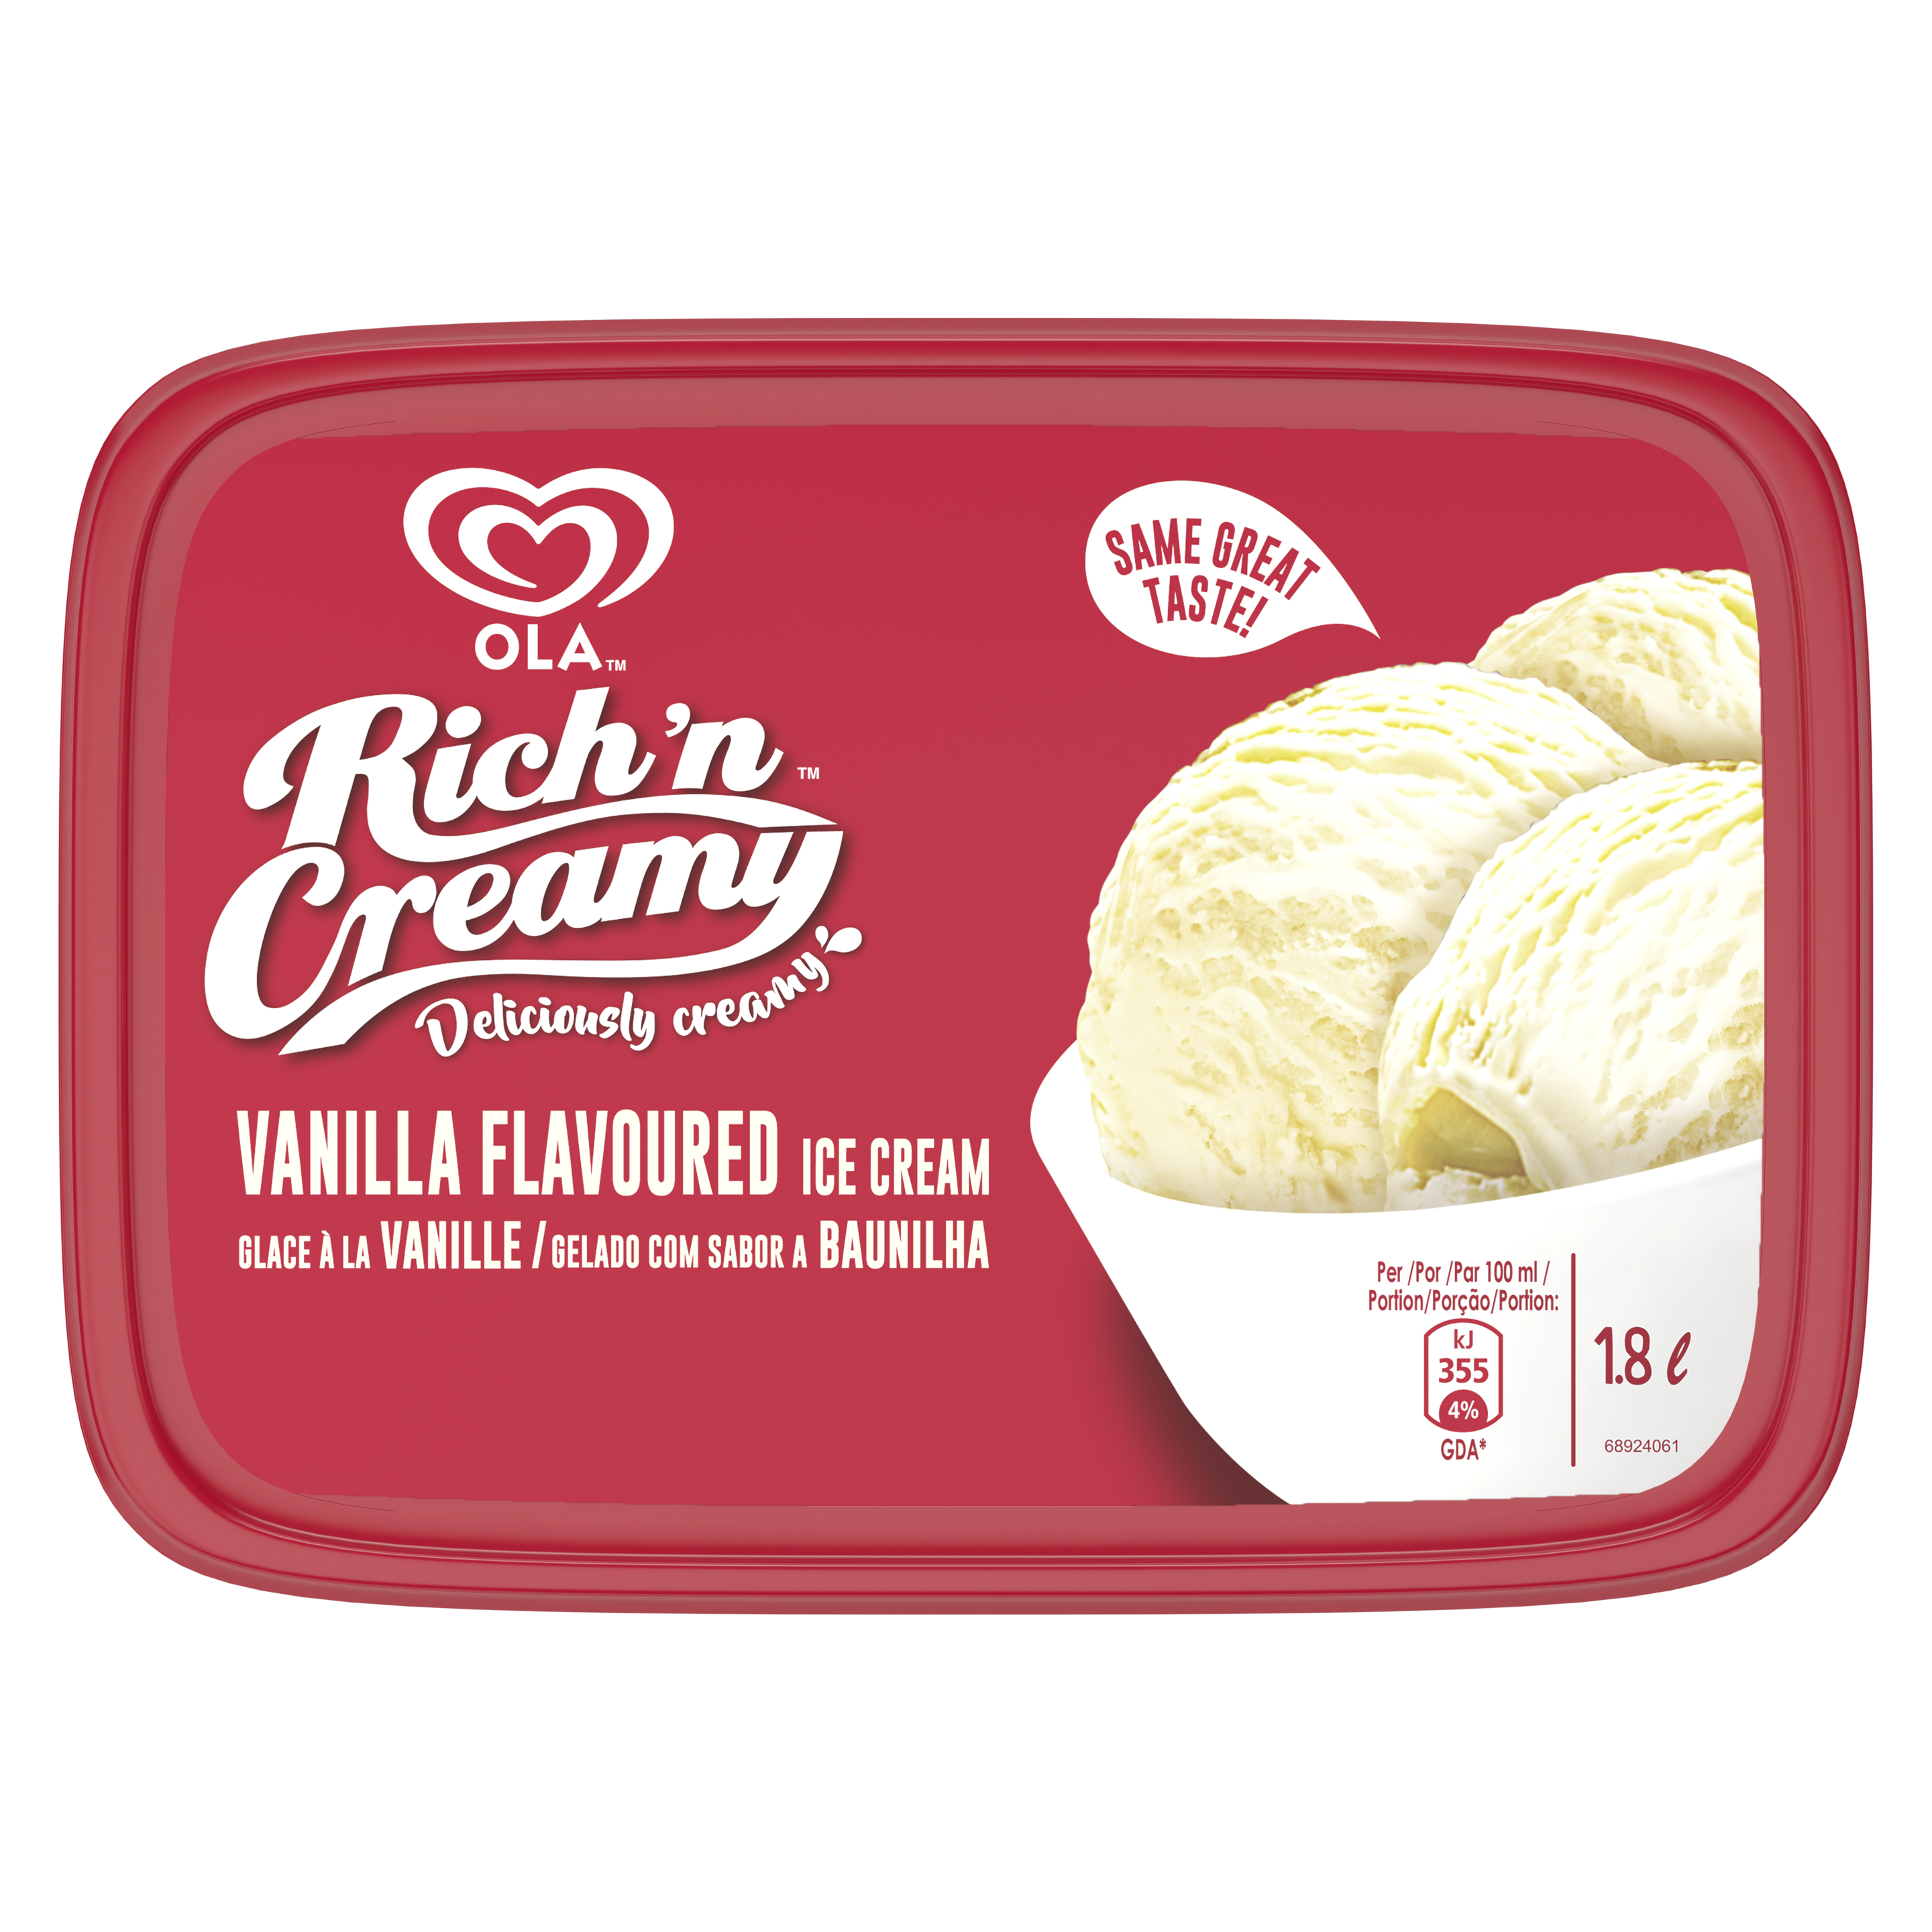 OLA Rich 'n Creamy Vanilla